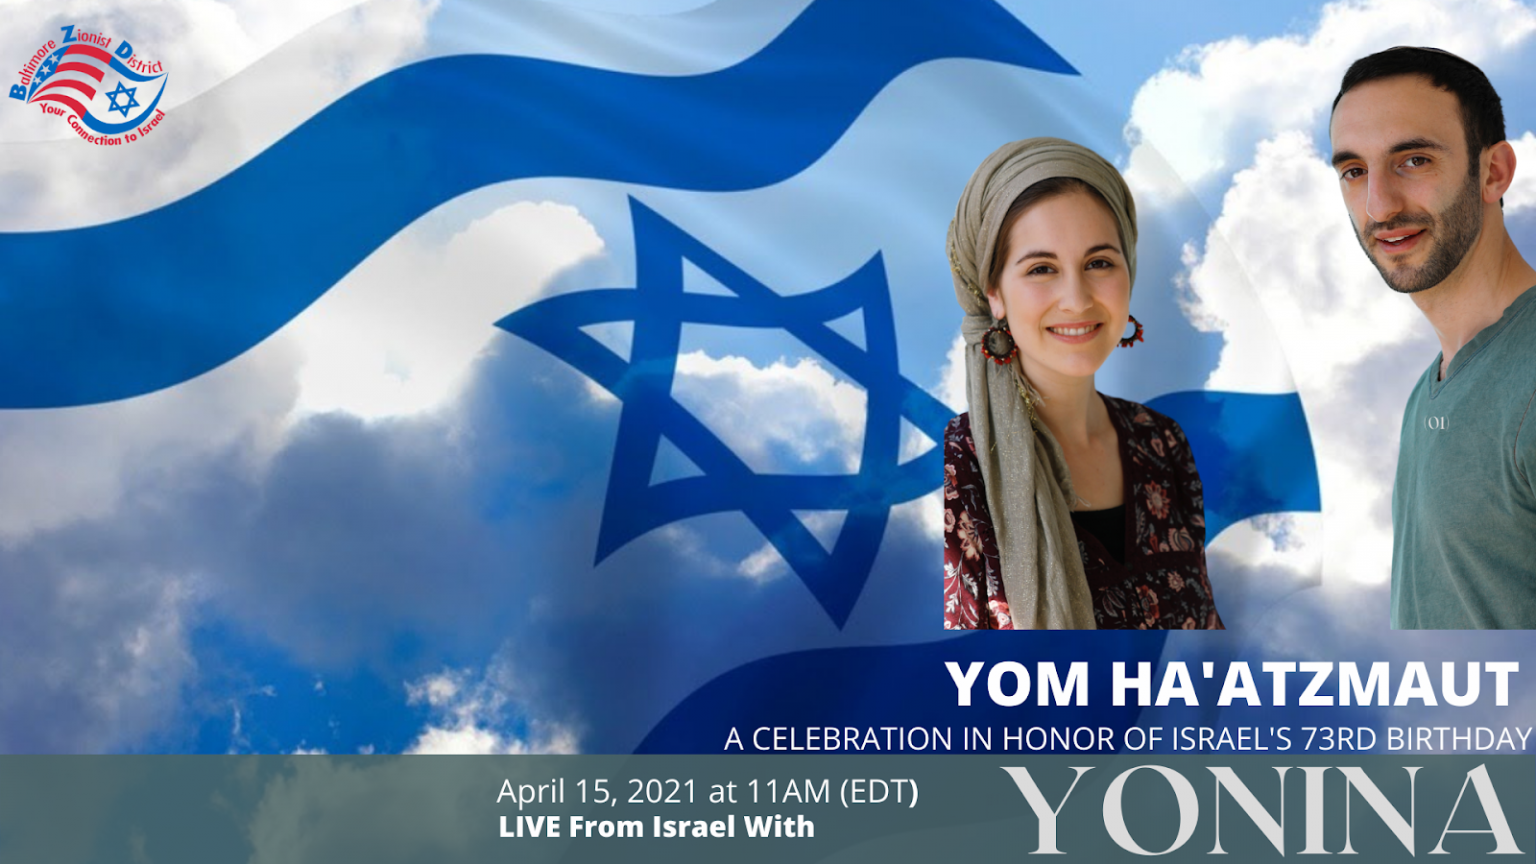 Yom Ha’atzmaut Celebration With Yonina My Jewish Learning